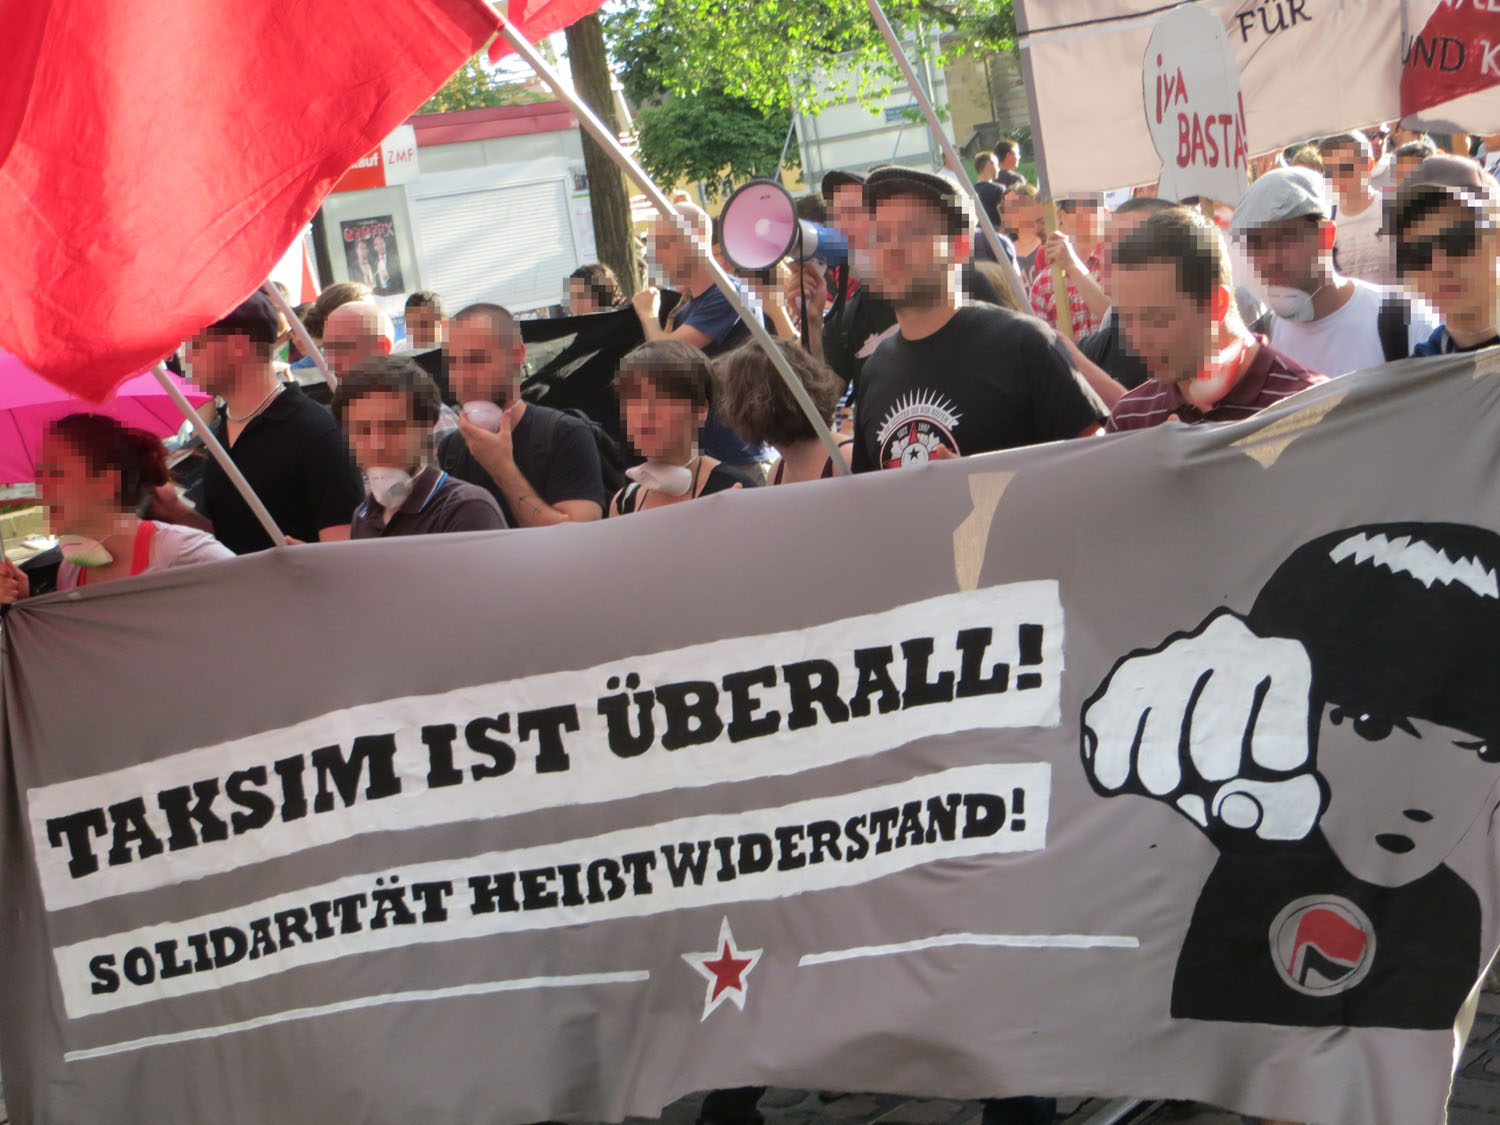 Bericht der Demonstration “Taksim ist überall! Solidarität heißt Widerstand!”